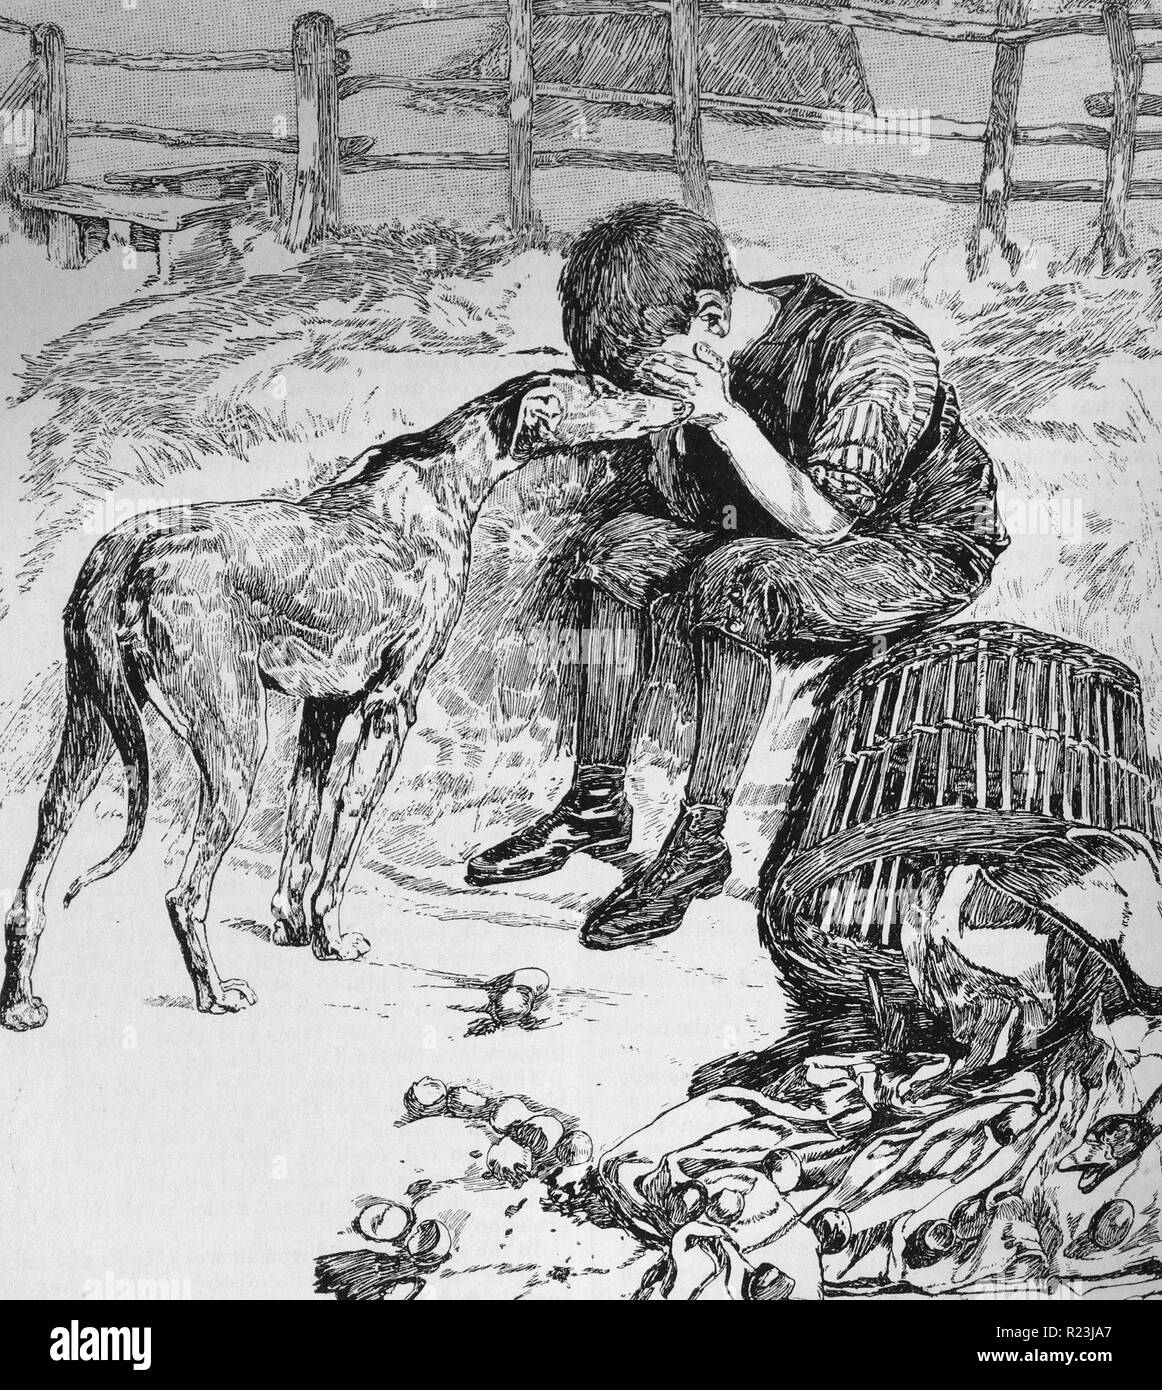 Ilustración de un libro que retrata a un joven huérfano y el perro rabioso. Los muchachos se sentó llorando por la pérdida de su producción, mientras que el perro affectingly lame sus manos. Fecha 1913 Foto de stock